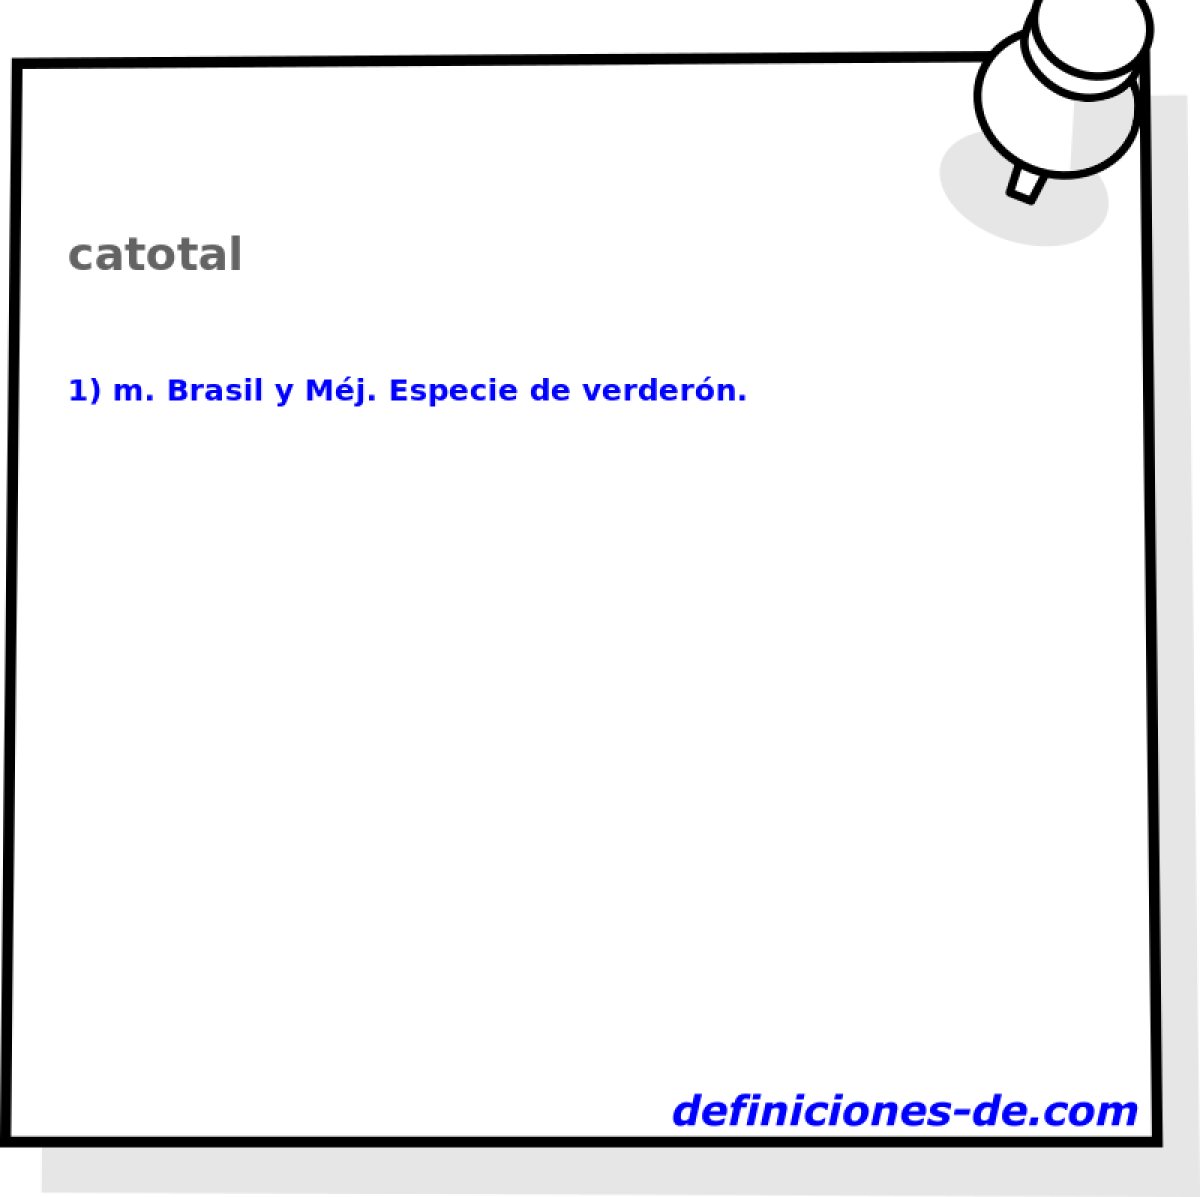 catotal 